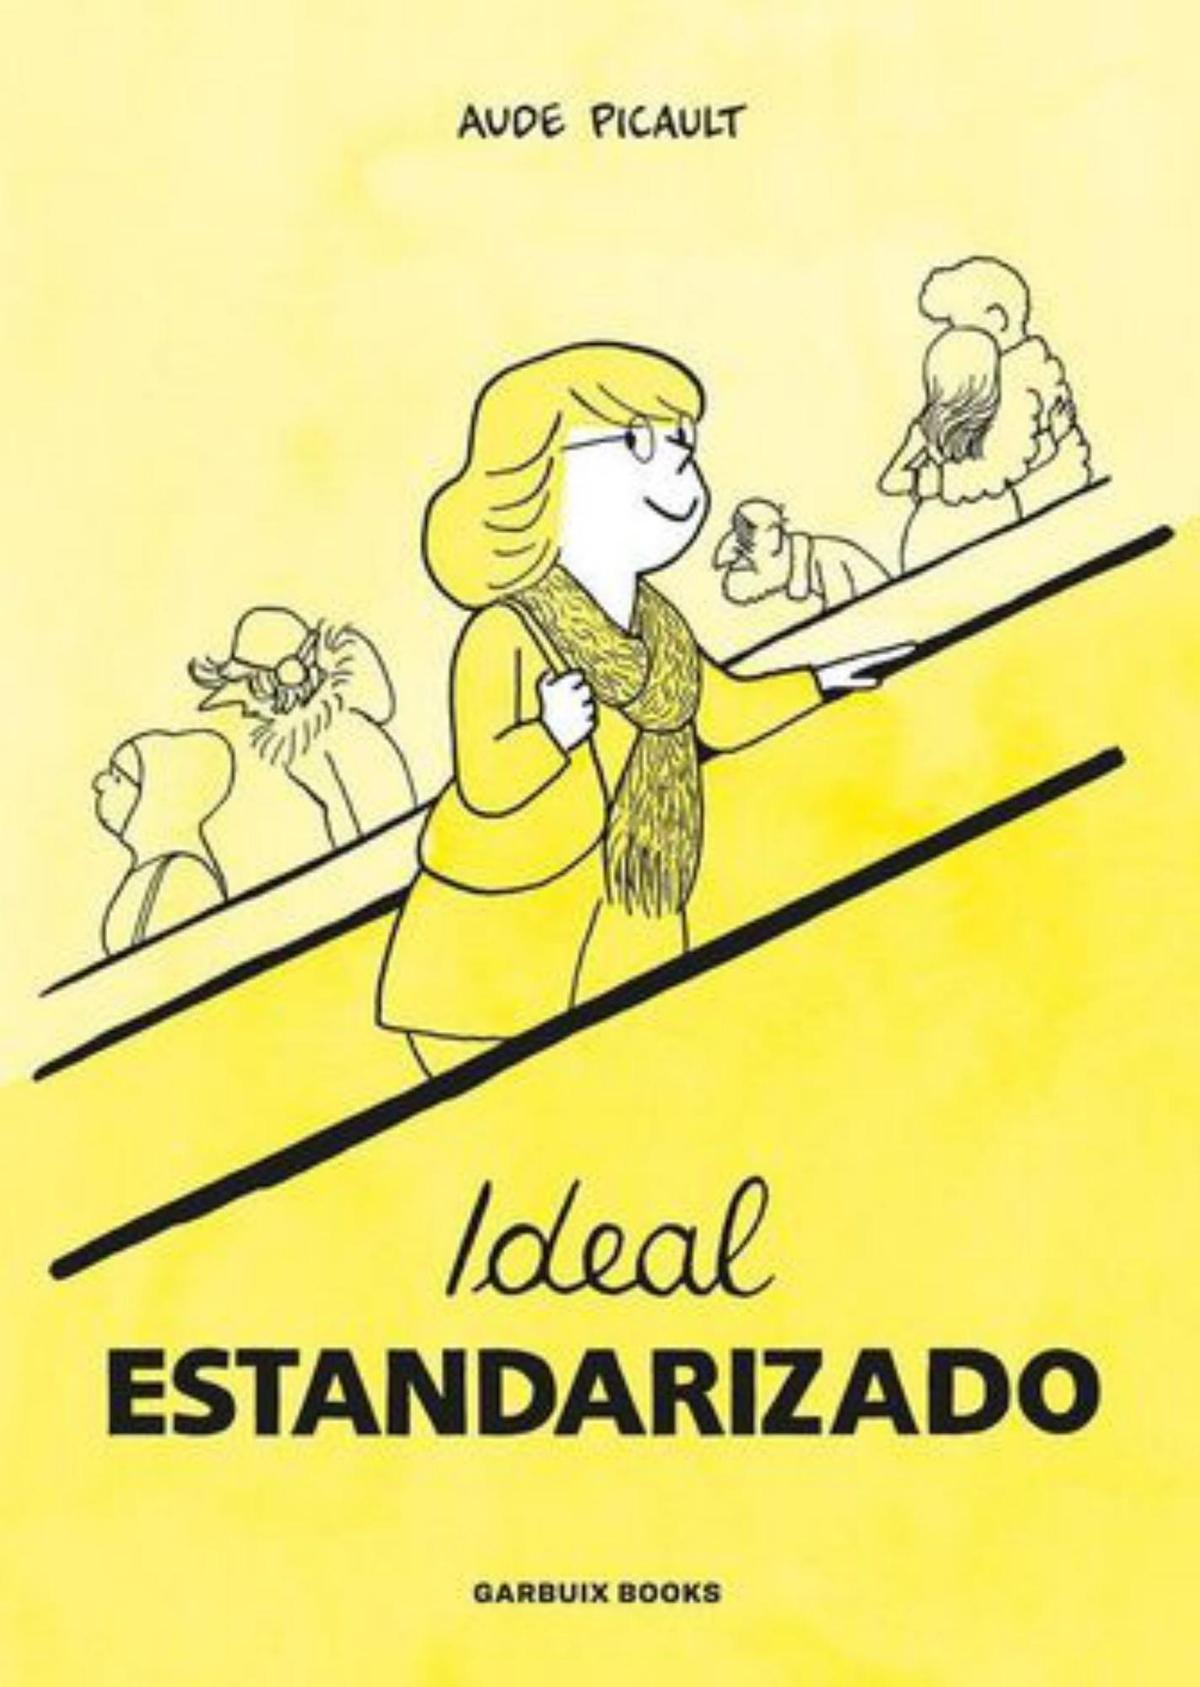 Aude Picault Ideal estandarizado Traducción de Montserrat Terrones Garbuix Books 148 páginas / 21,95 euros